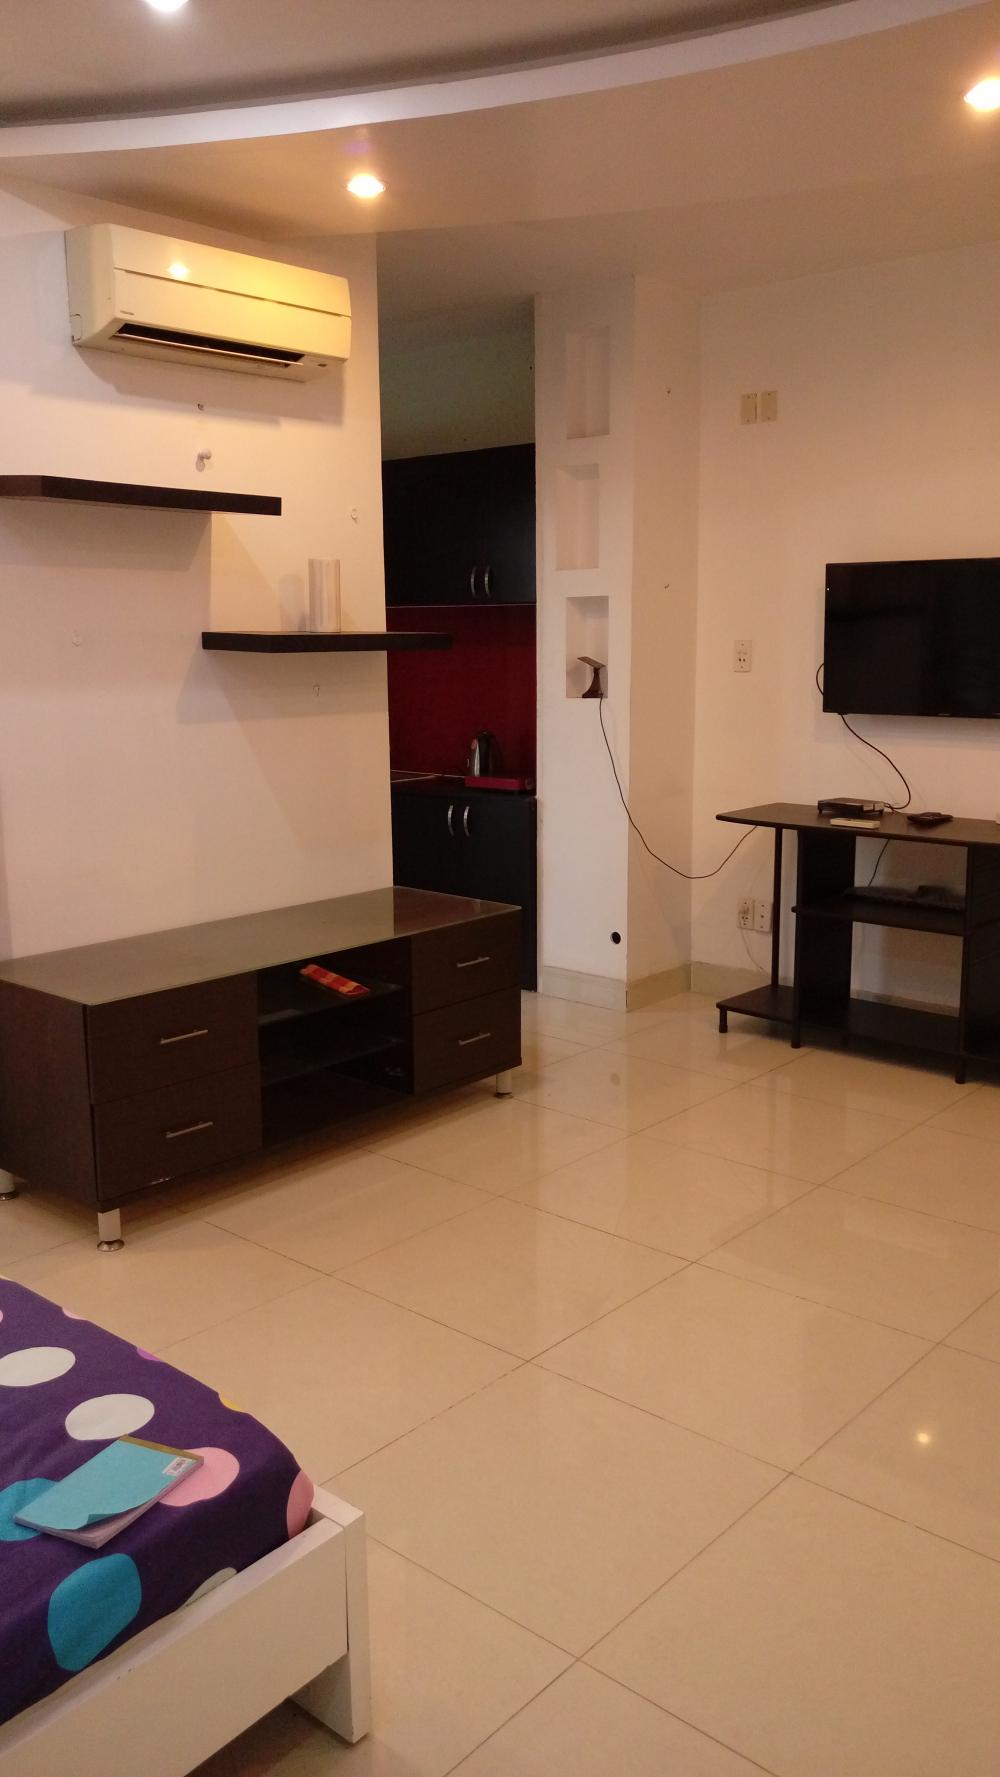 Cho thuê căn hộ dịch vụ nhà sạch mới giá rẻ 6- 7,5 triệu/tháng trong Phú Mỹ Hưng. LH: 0911374499